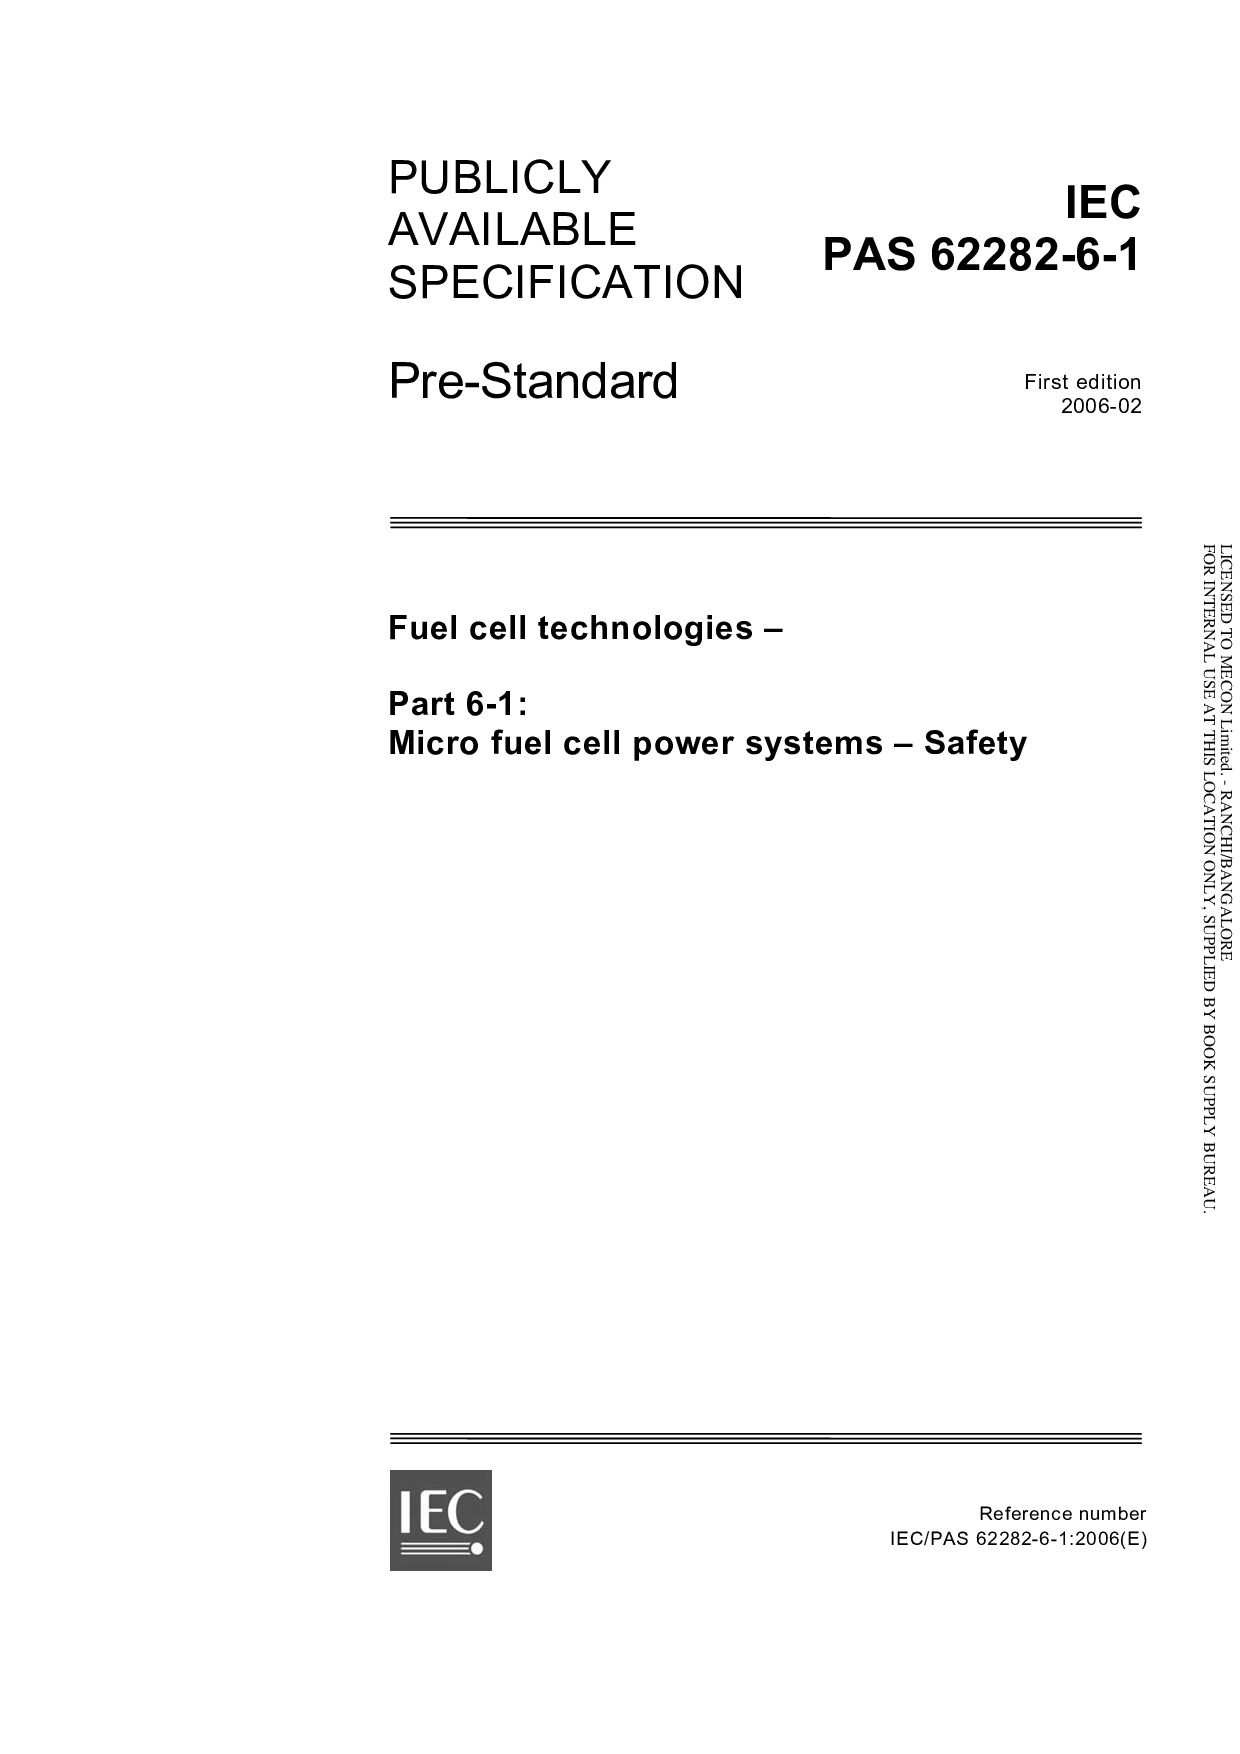 IEC PAS 62282-6-1:2006